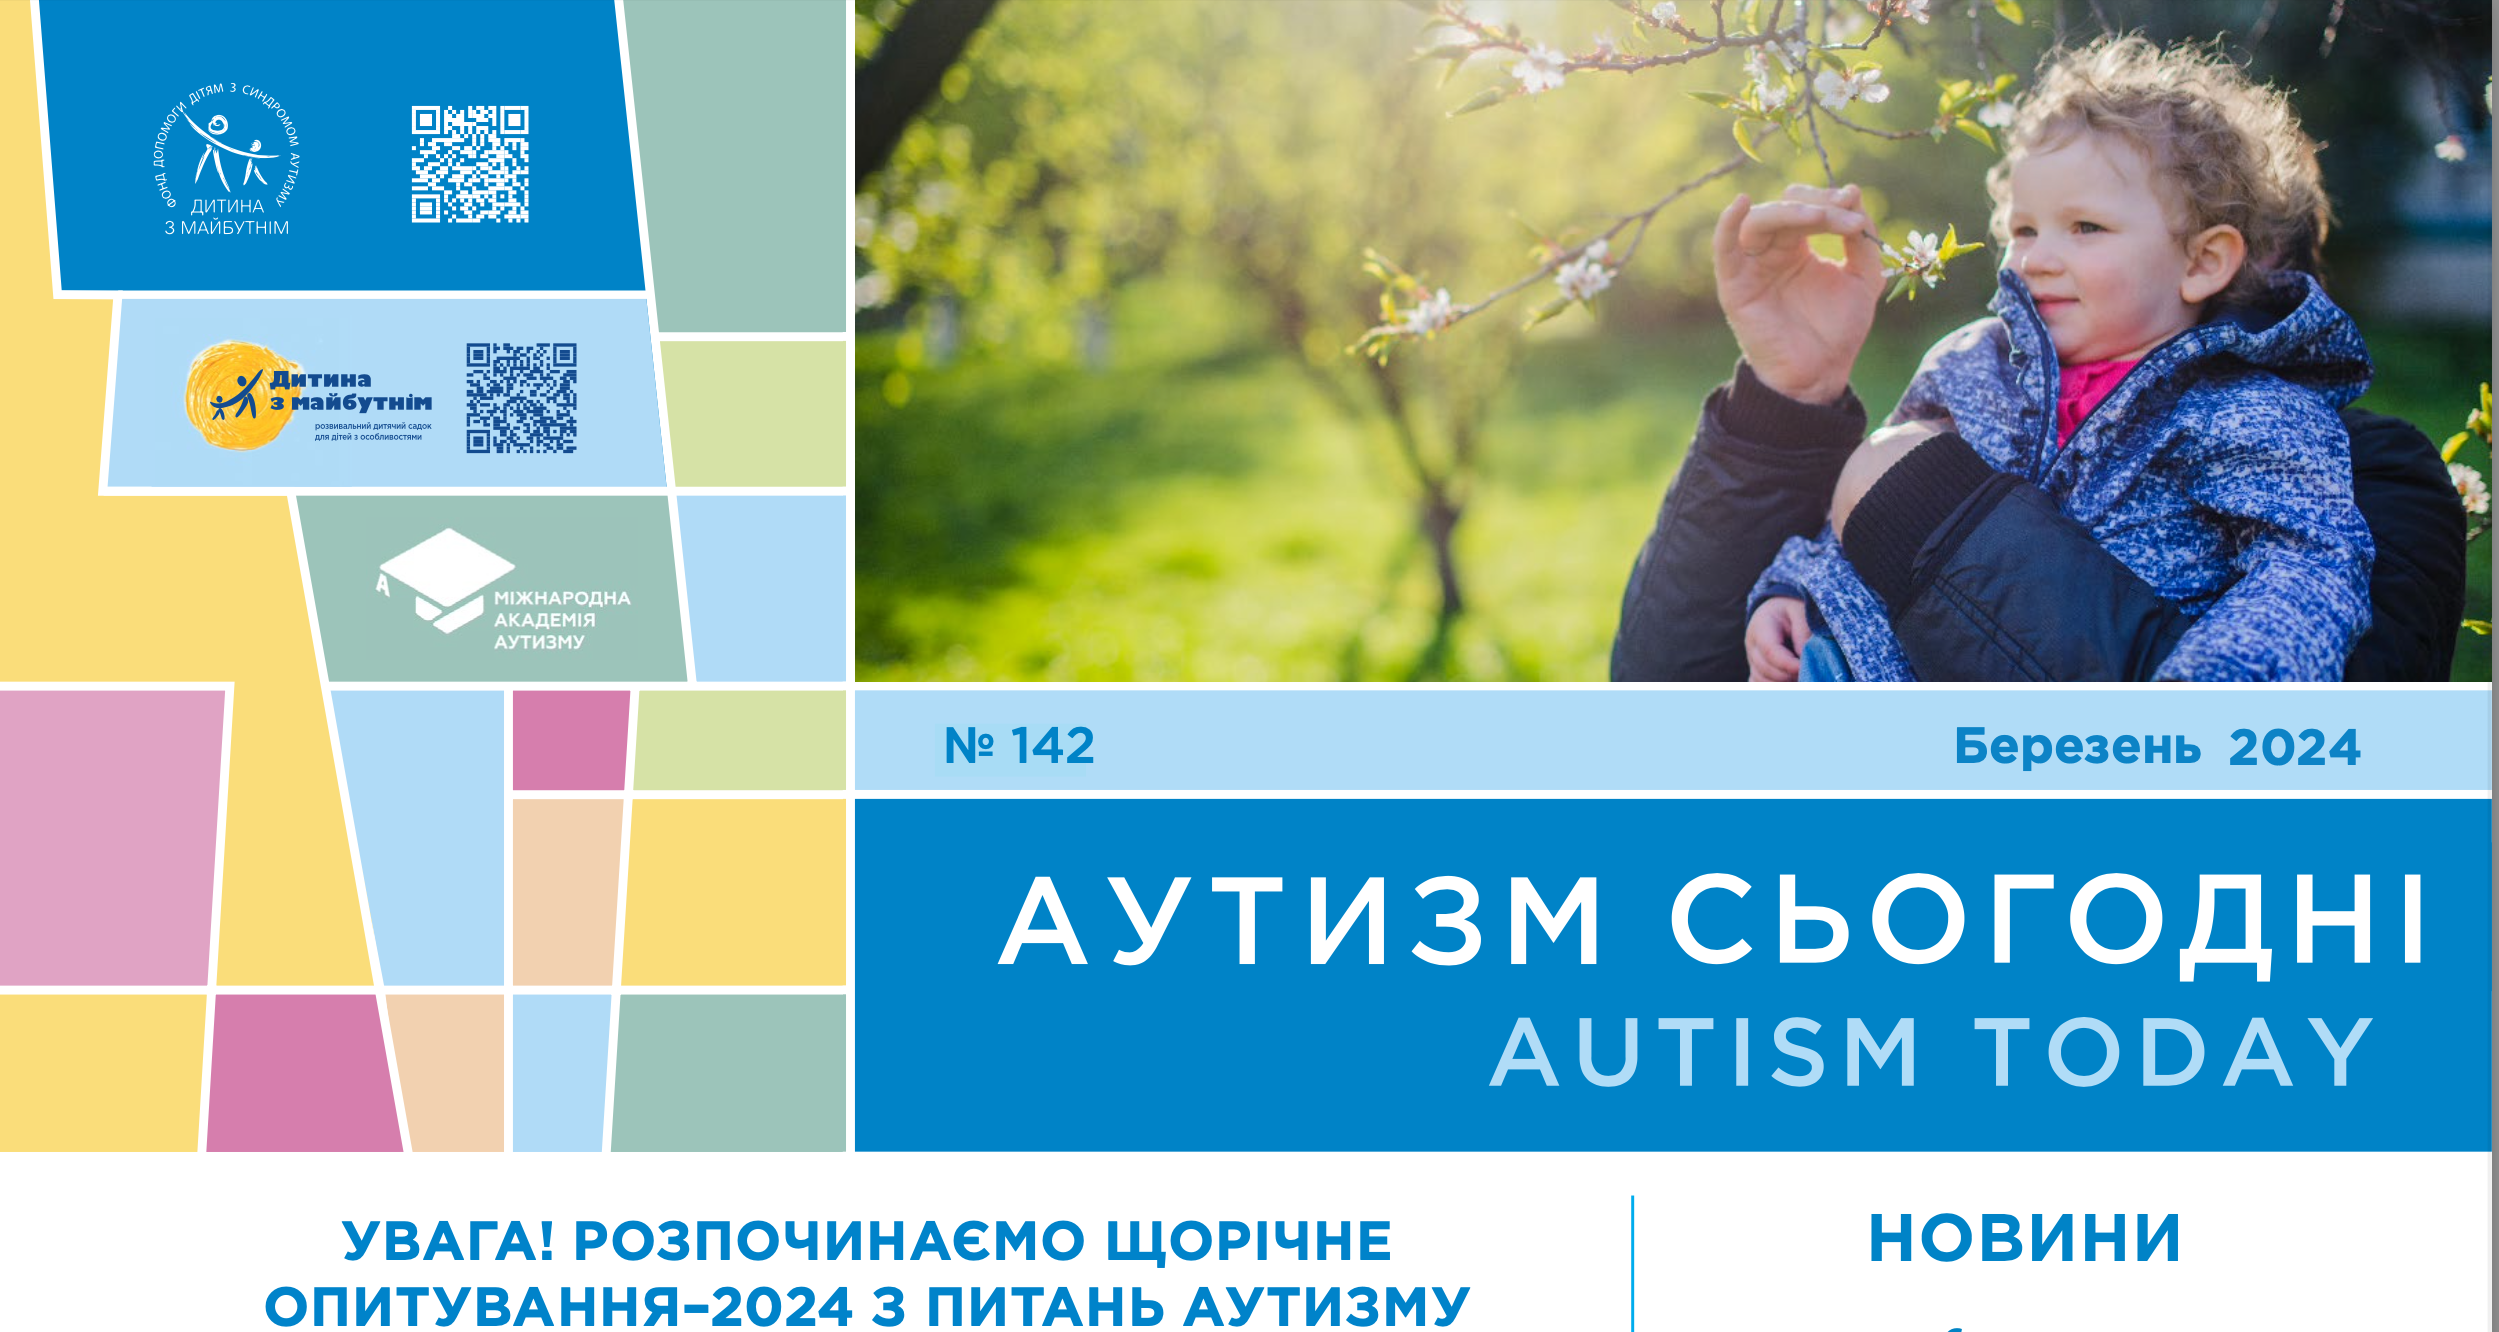 Запуск телеграм каналу “Аутизм & Інклюзія”, щорічне опитування з питань аутизму та діагностування РАС в Україні – на сторінках березневого випуску “Аутизм Сьогодні”